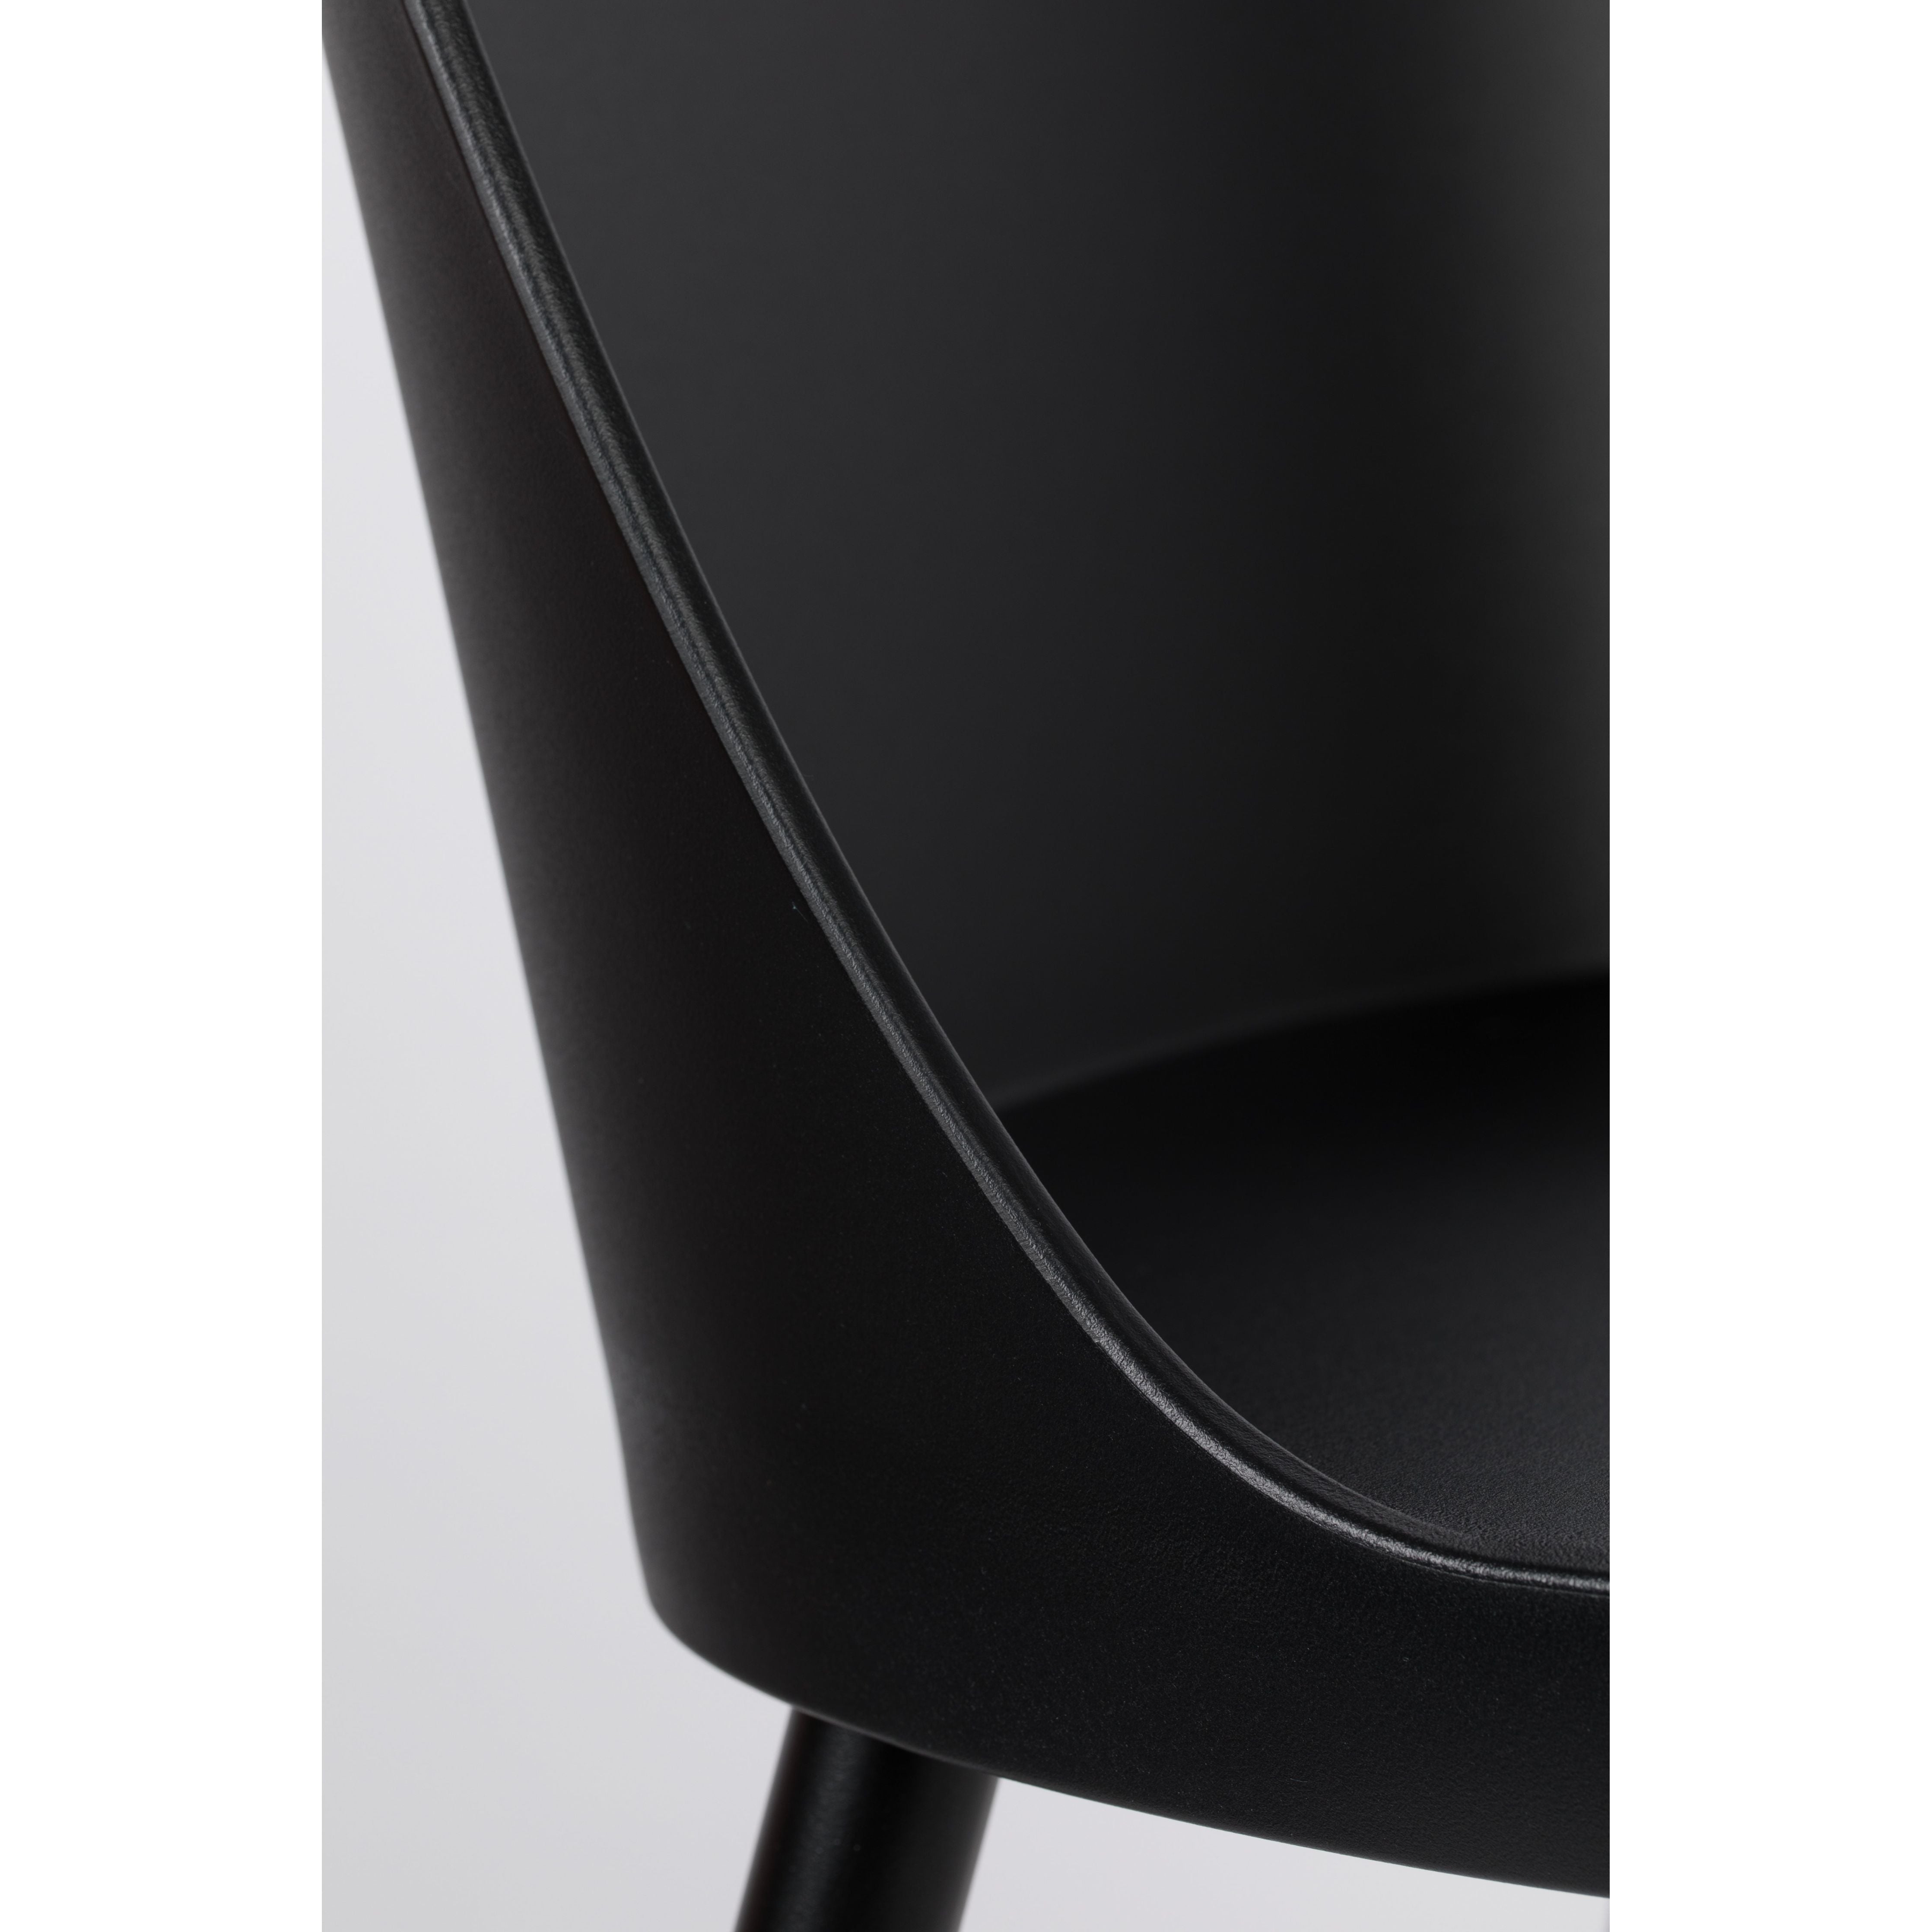 Chair pip all black